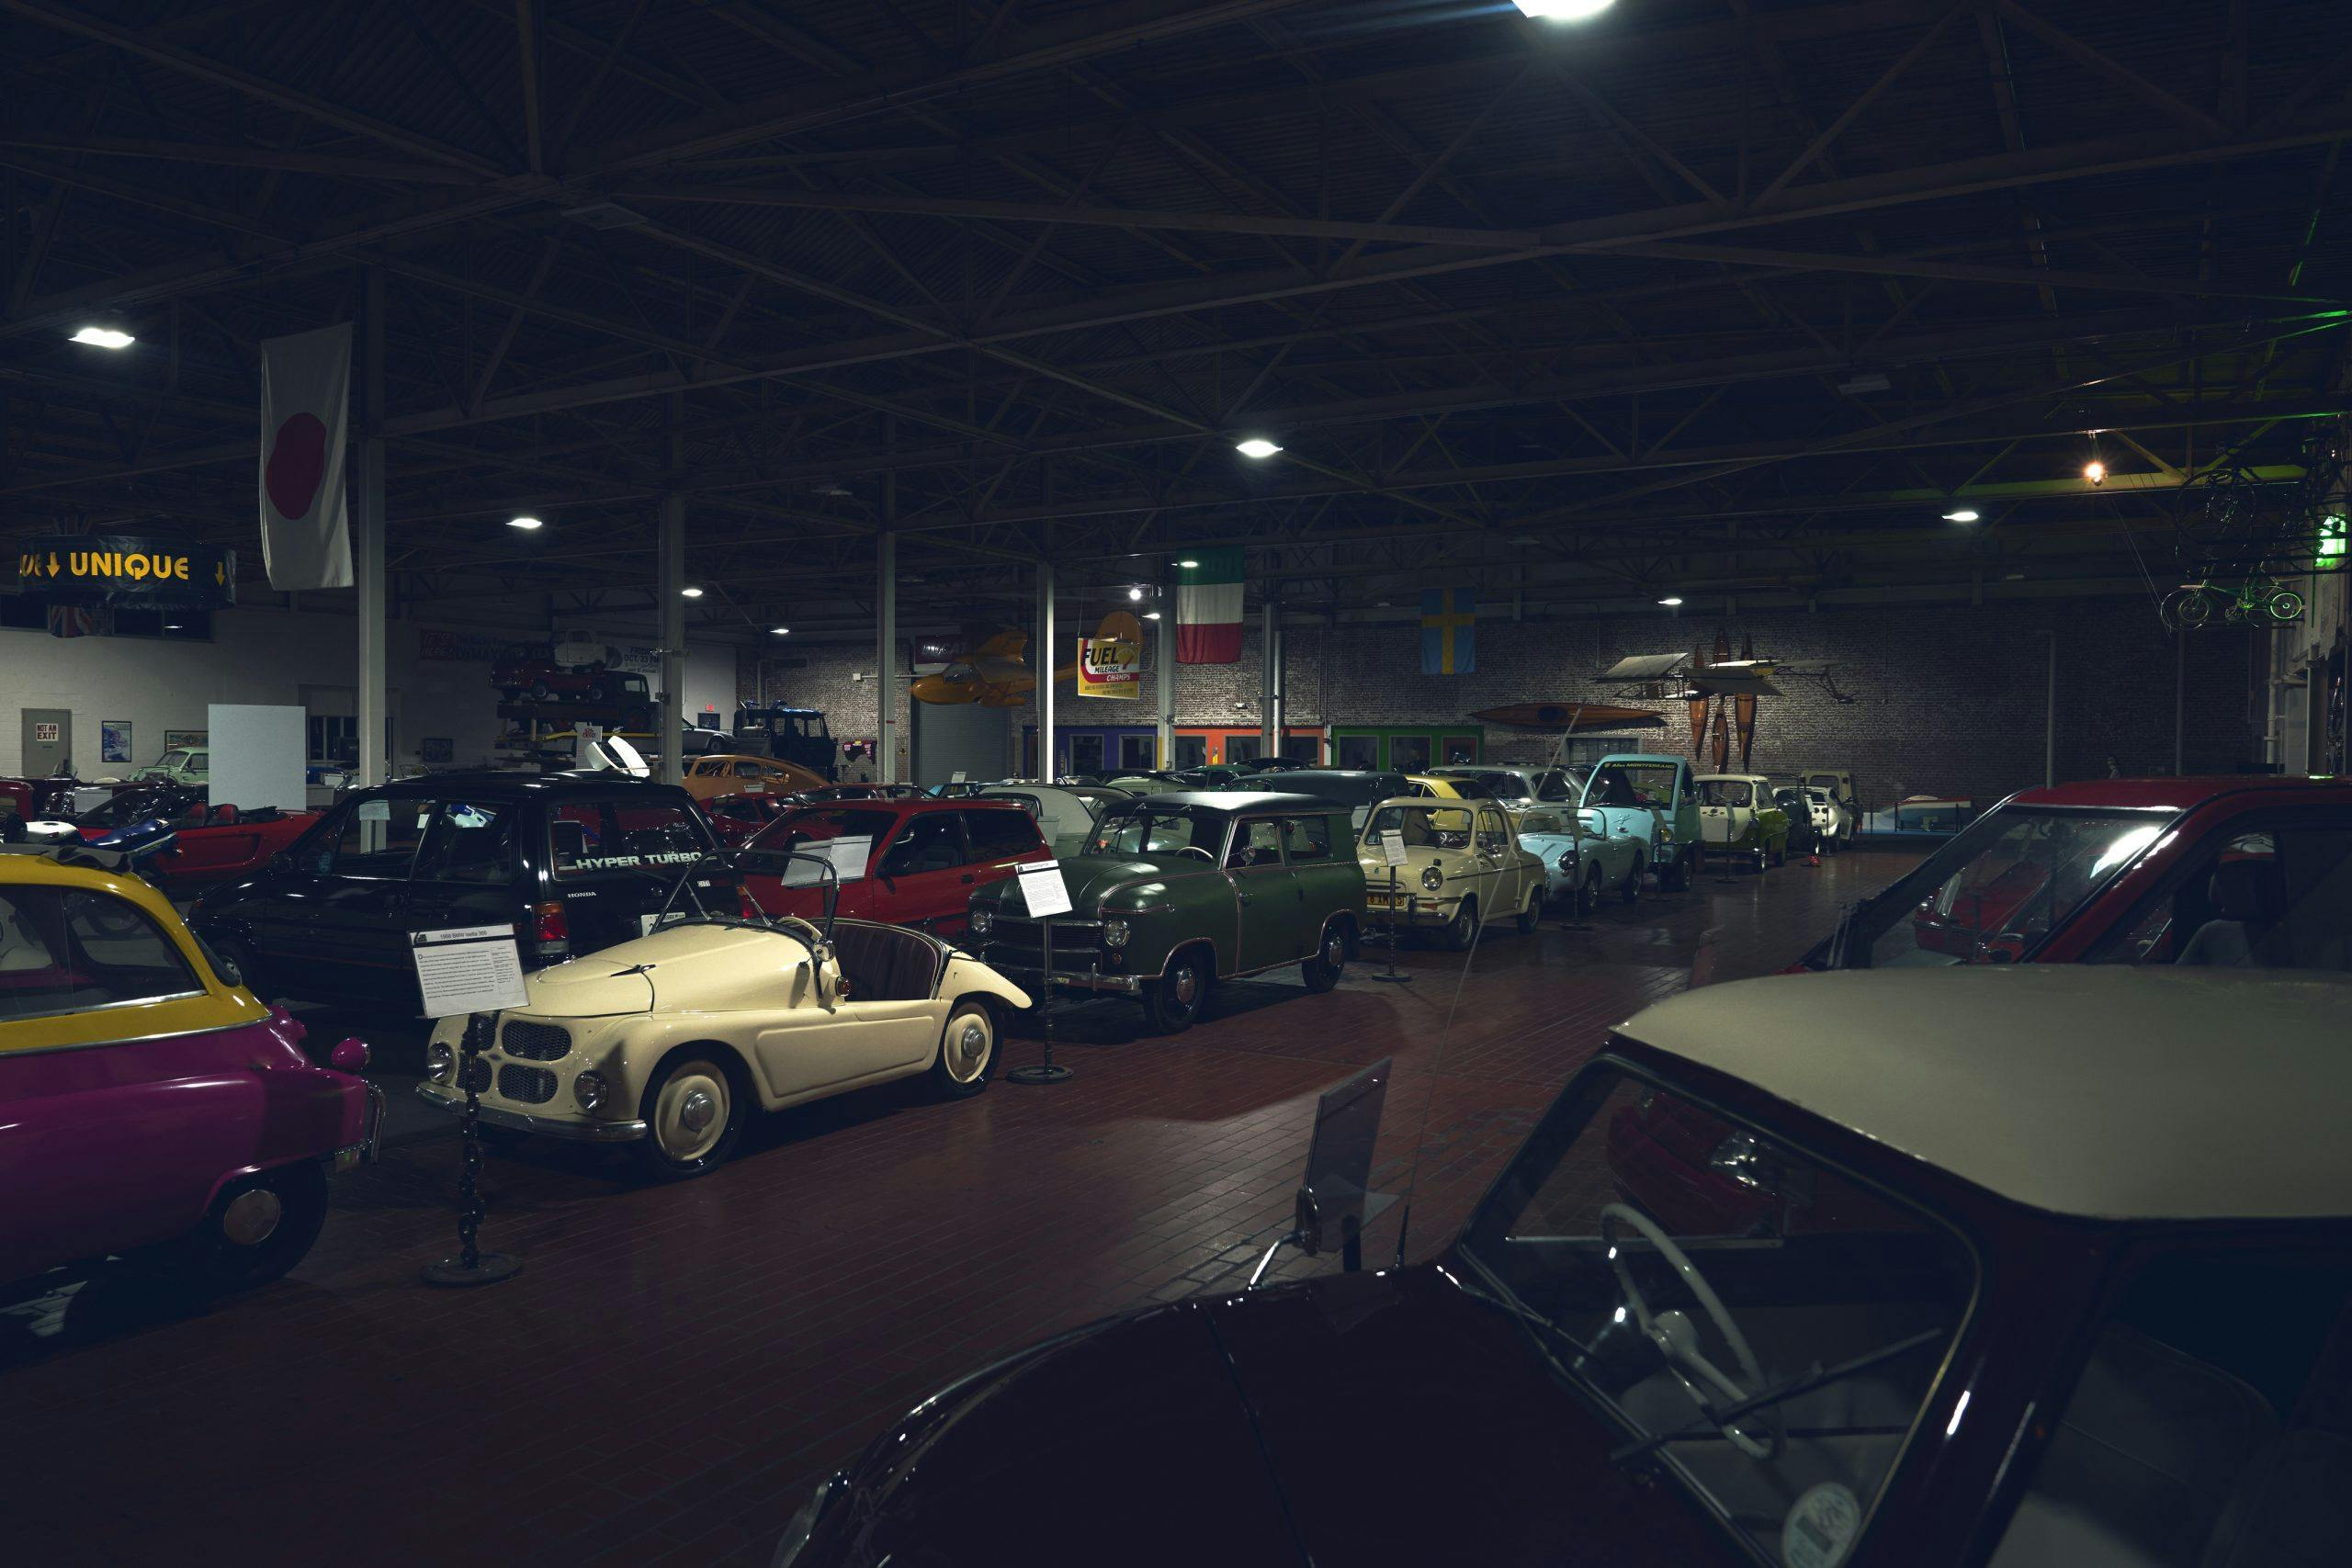 Nashville vintage car museum collection